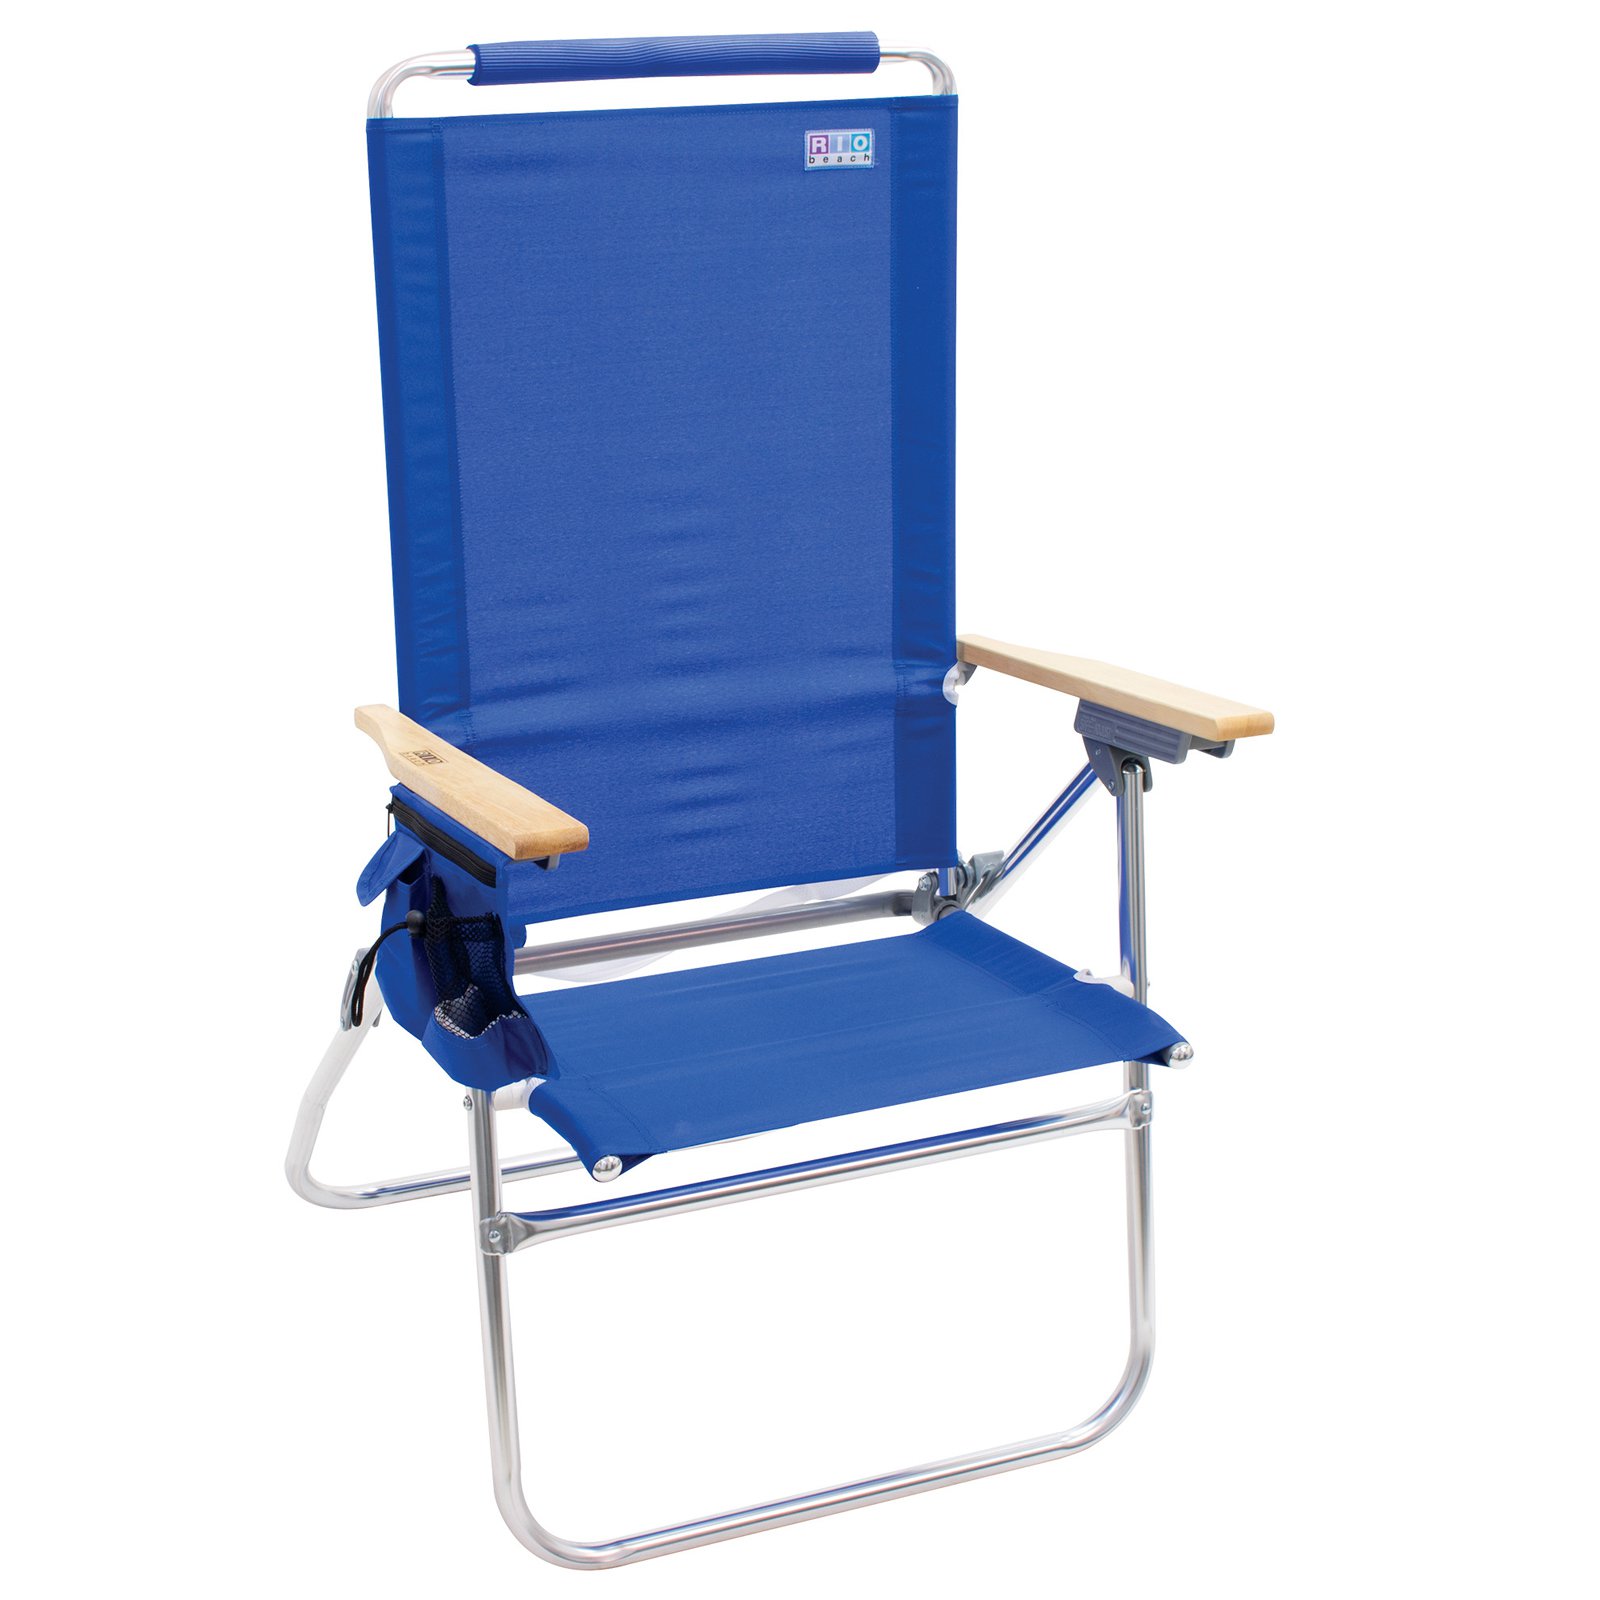 RIO Beach Hi-Boy Aluminum Beach Chair, Blue, Adjustable Lounge Chair - image 3 of 3